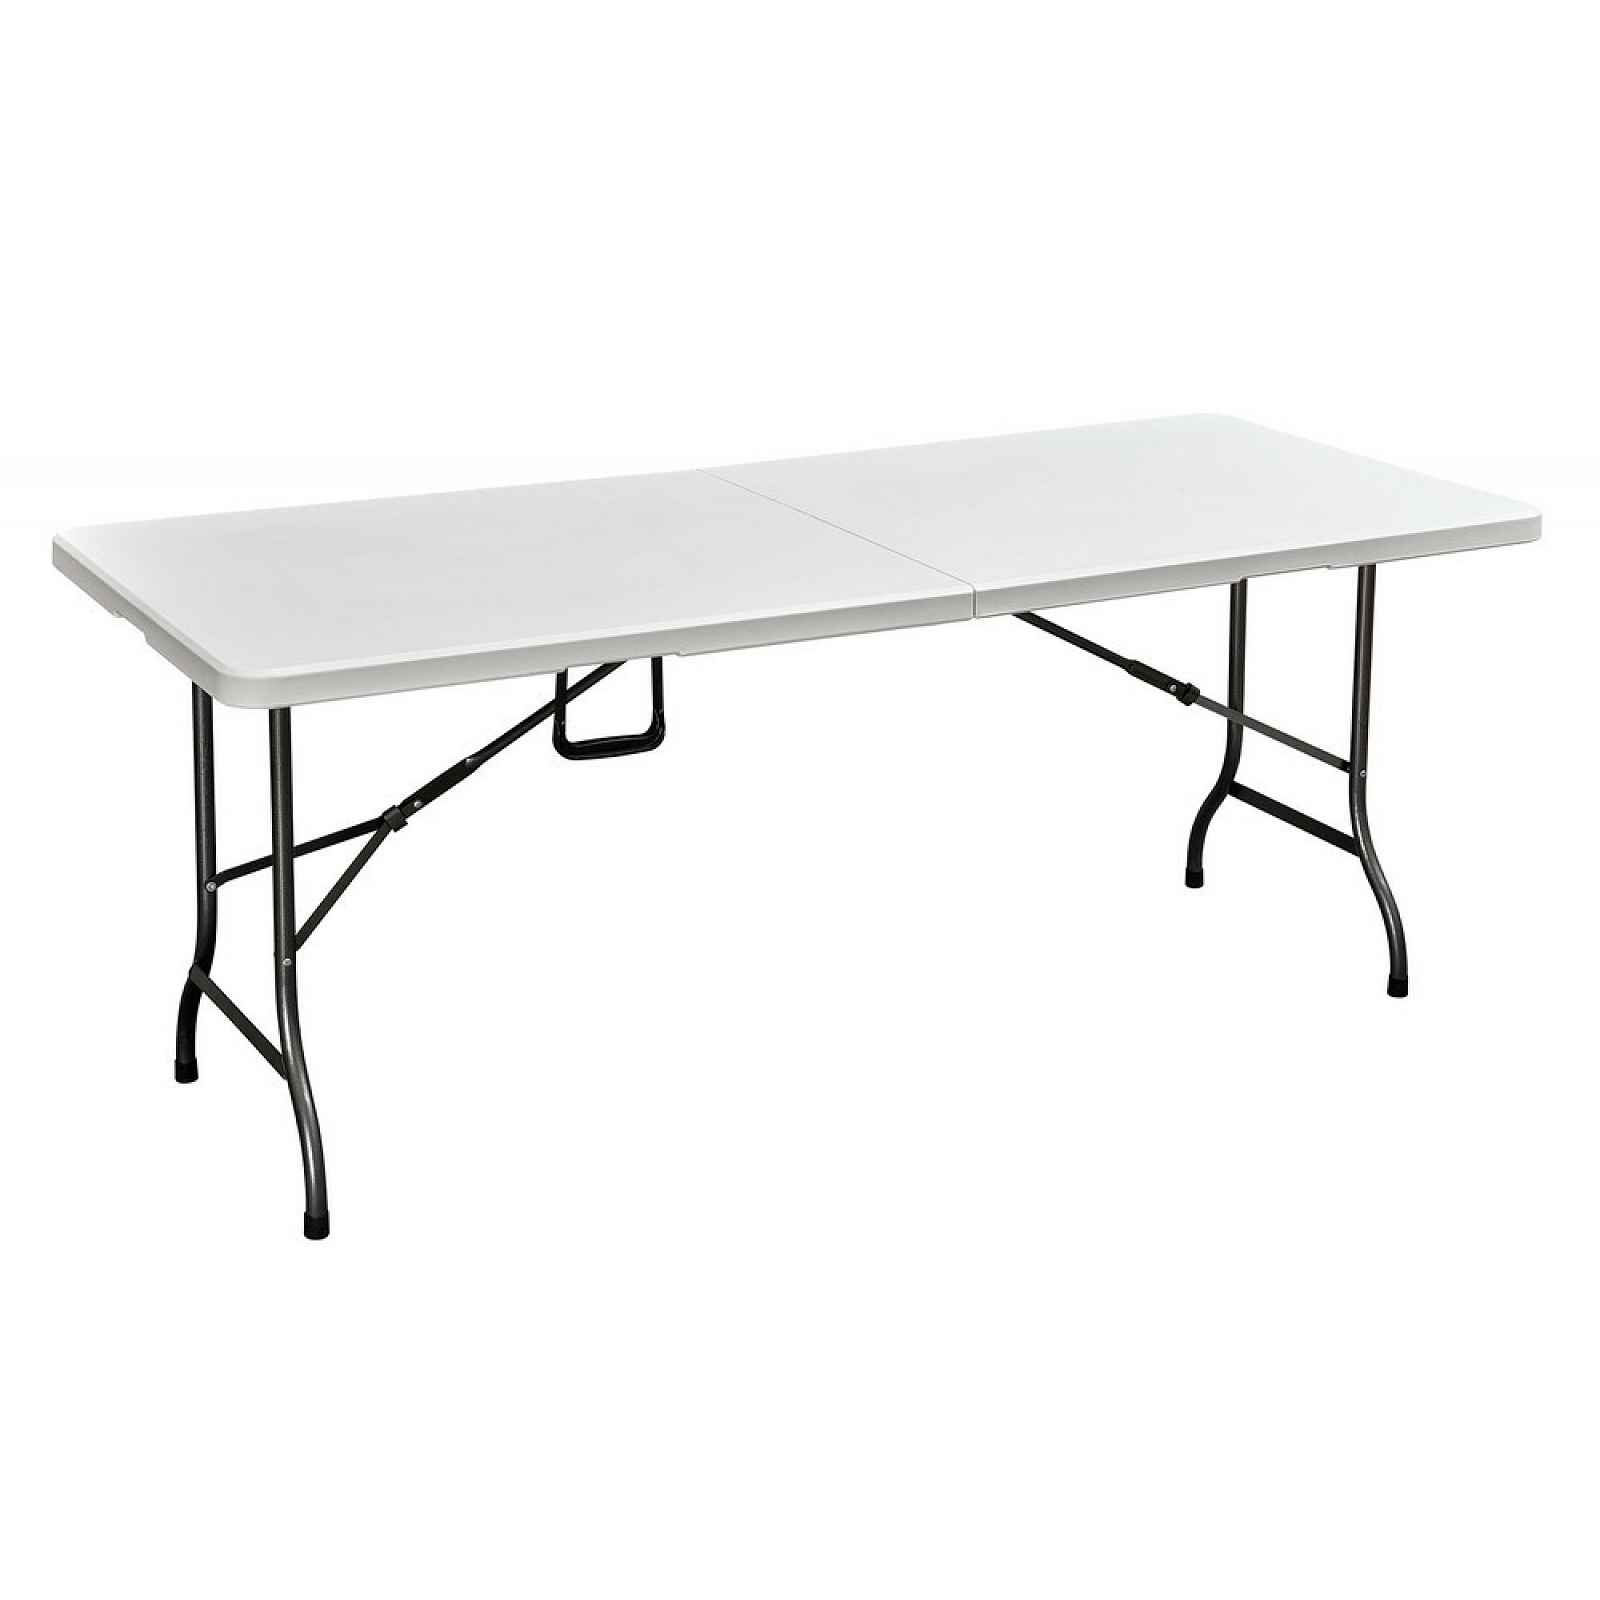 Skládací stůl kempingový ocel / plast Rojaplast 180x75x72 cm